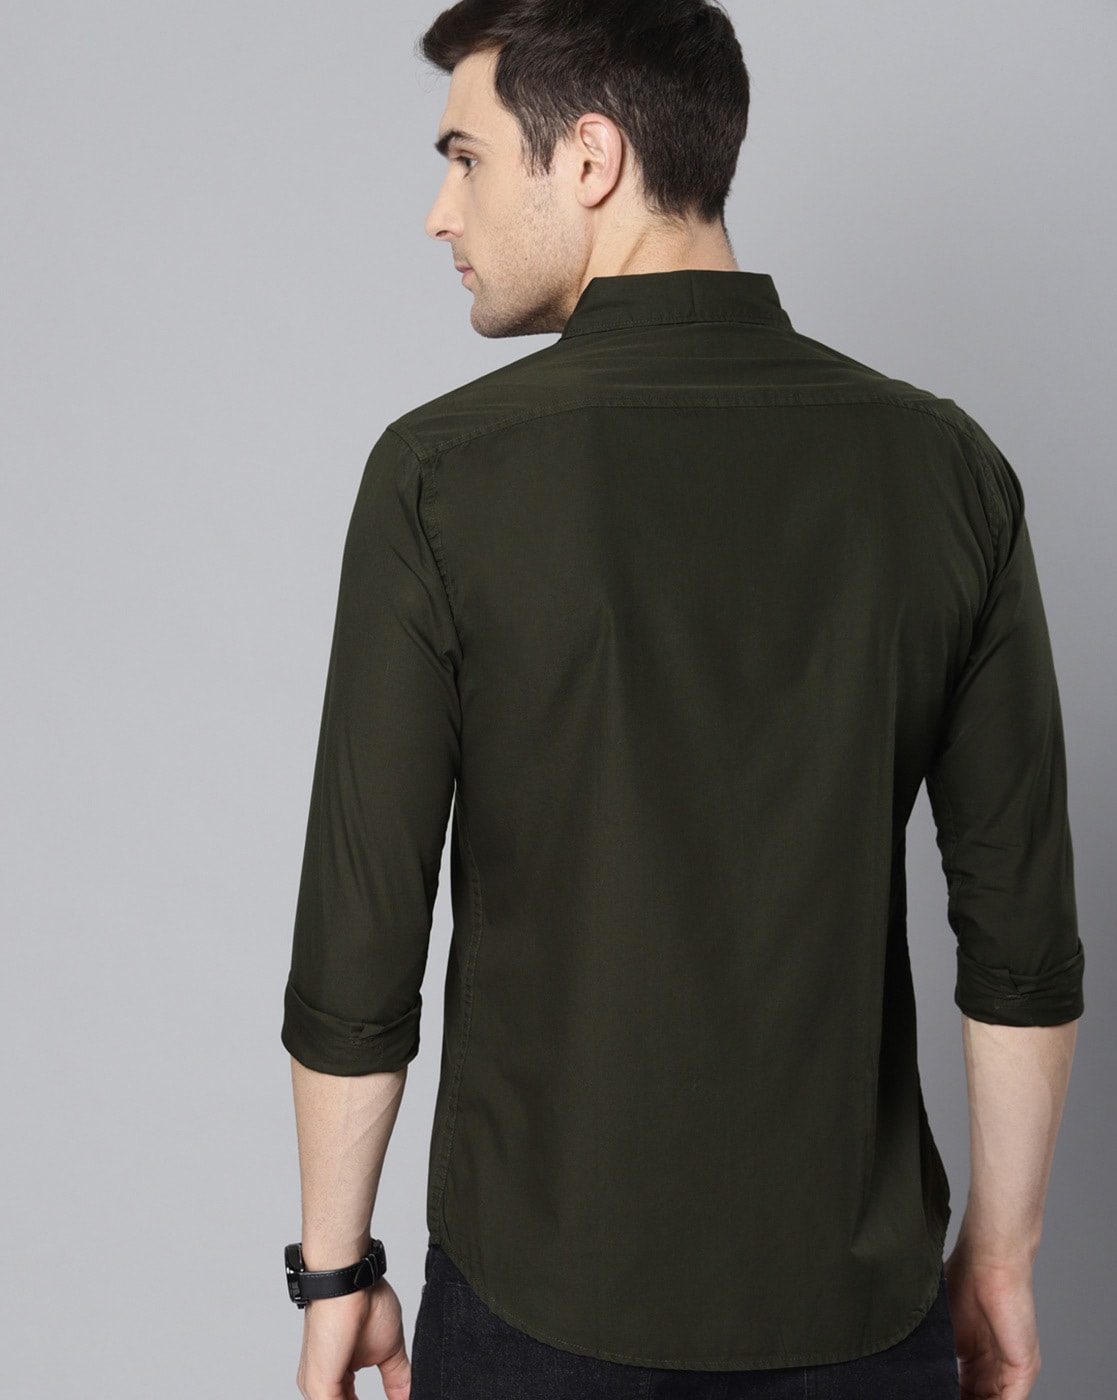 Buy Men's Sparkling Olive Shirt Online